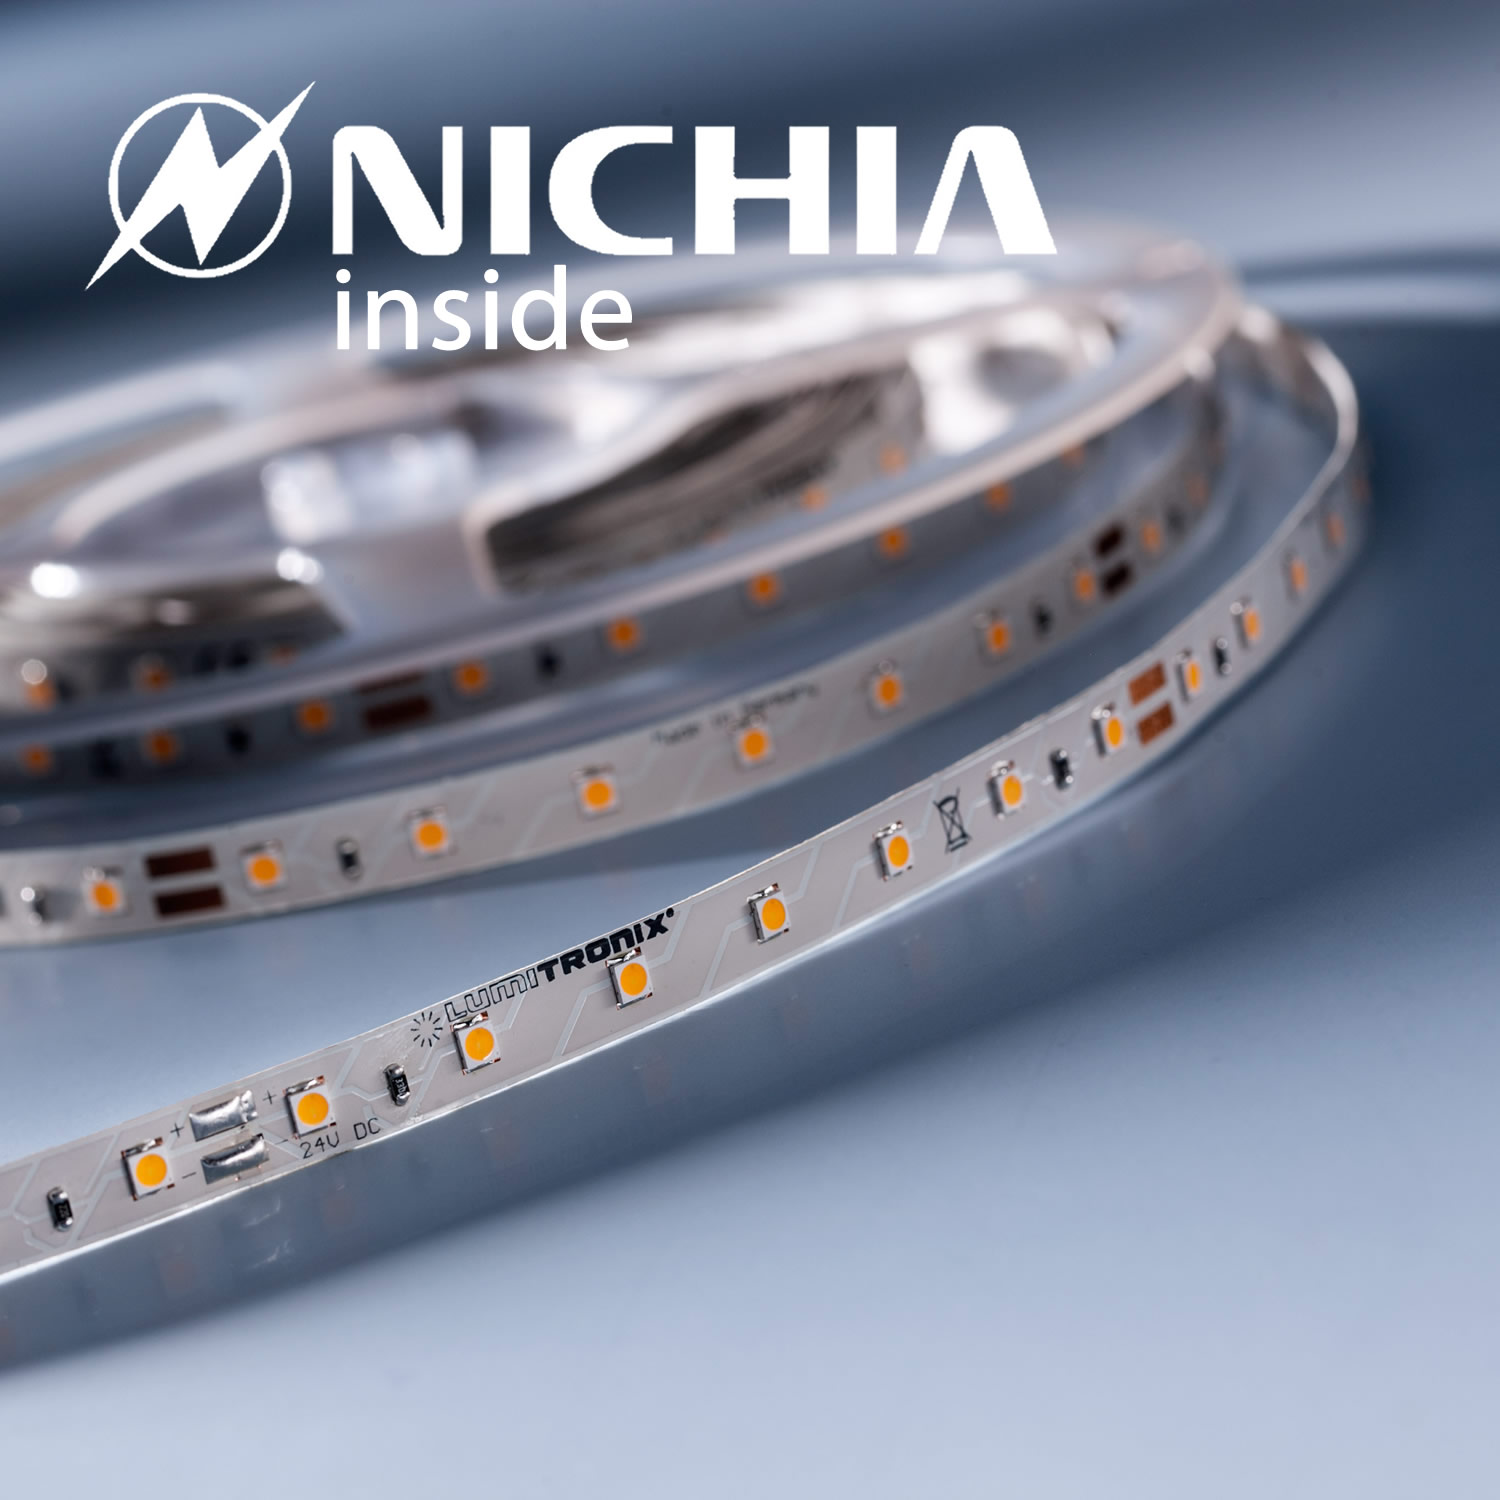 LumiFlex2080 Nichia LED Strip neutral white 4000K 6640lm 24V 21 LEDs/ft price for 19.68in/50cm (405lm & 3W/ft)